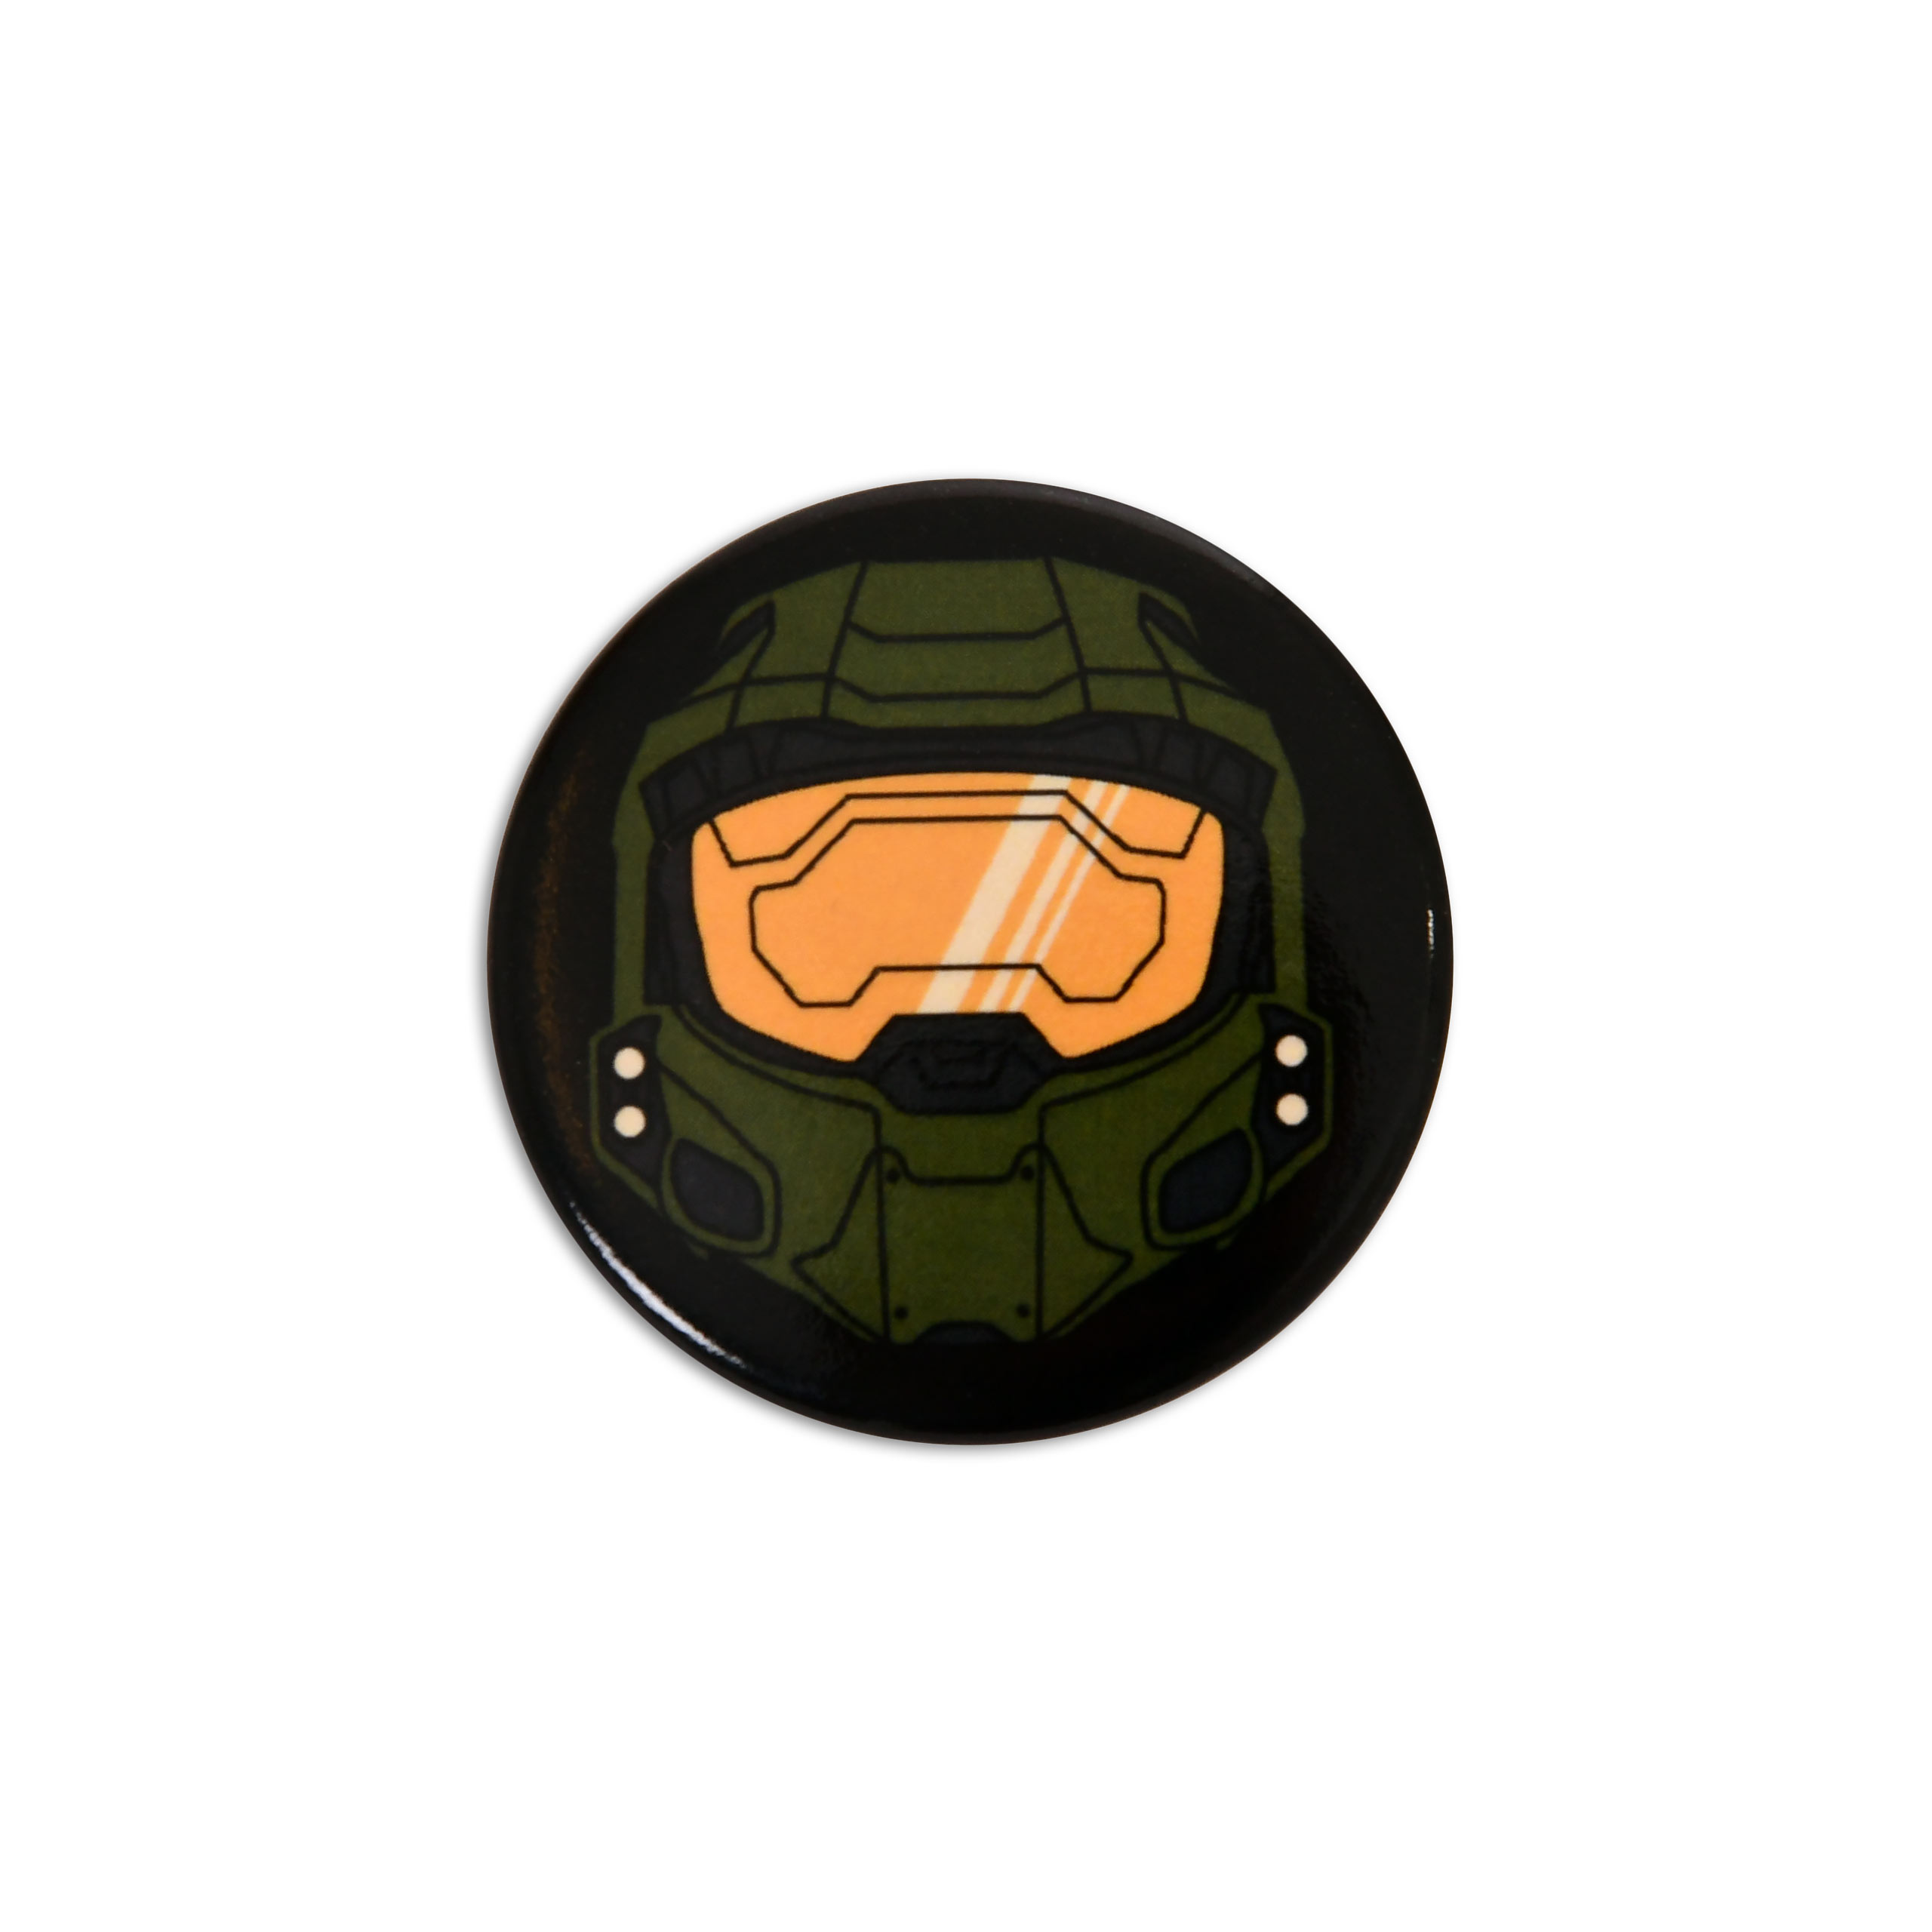 Master Chief Button für Halo Fans